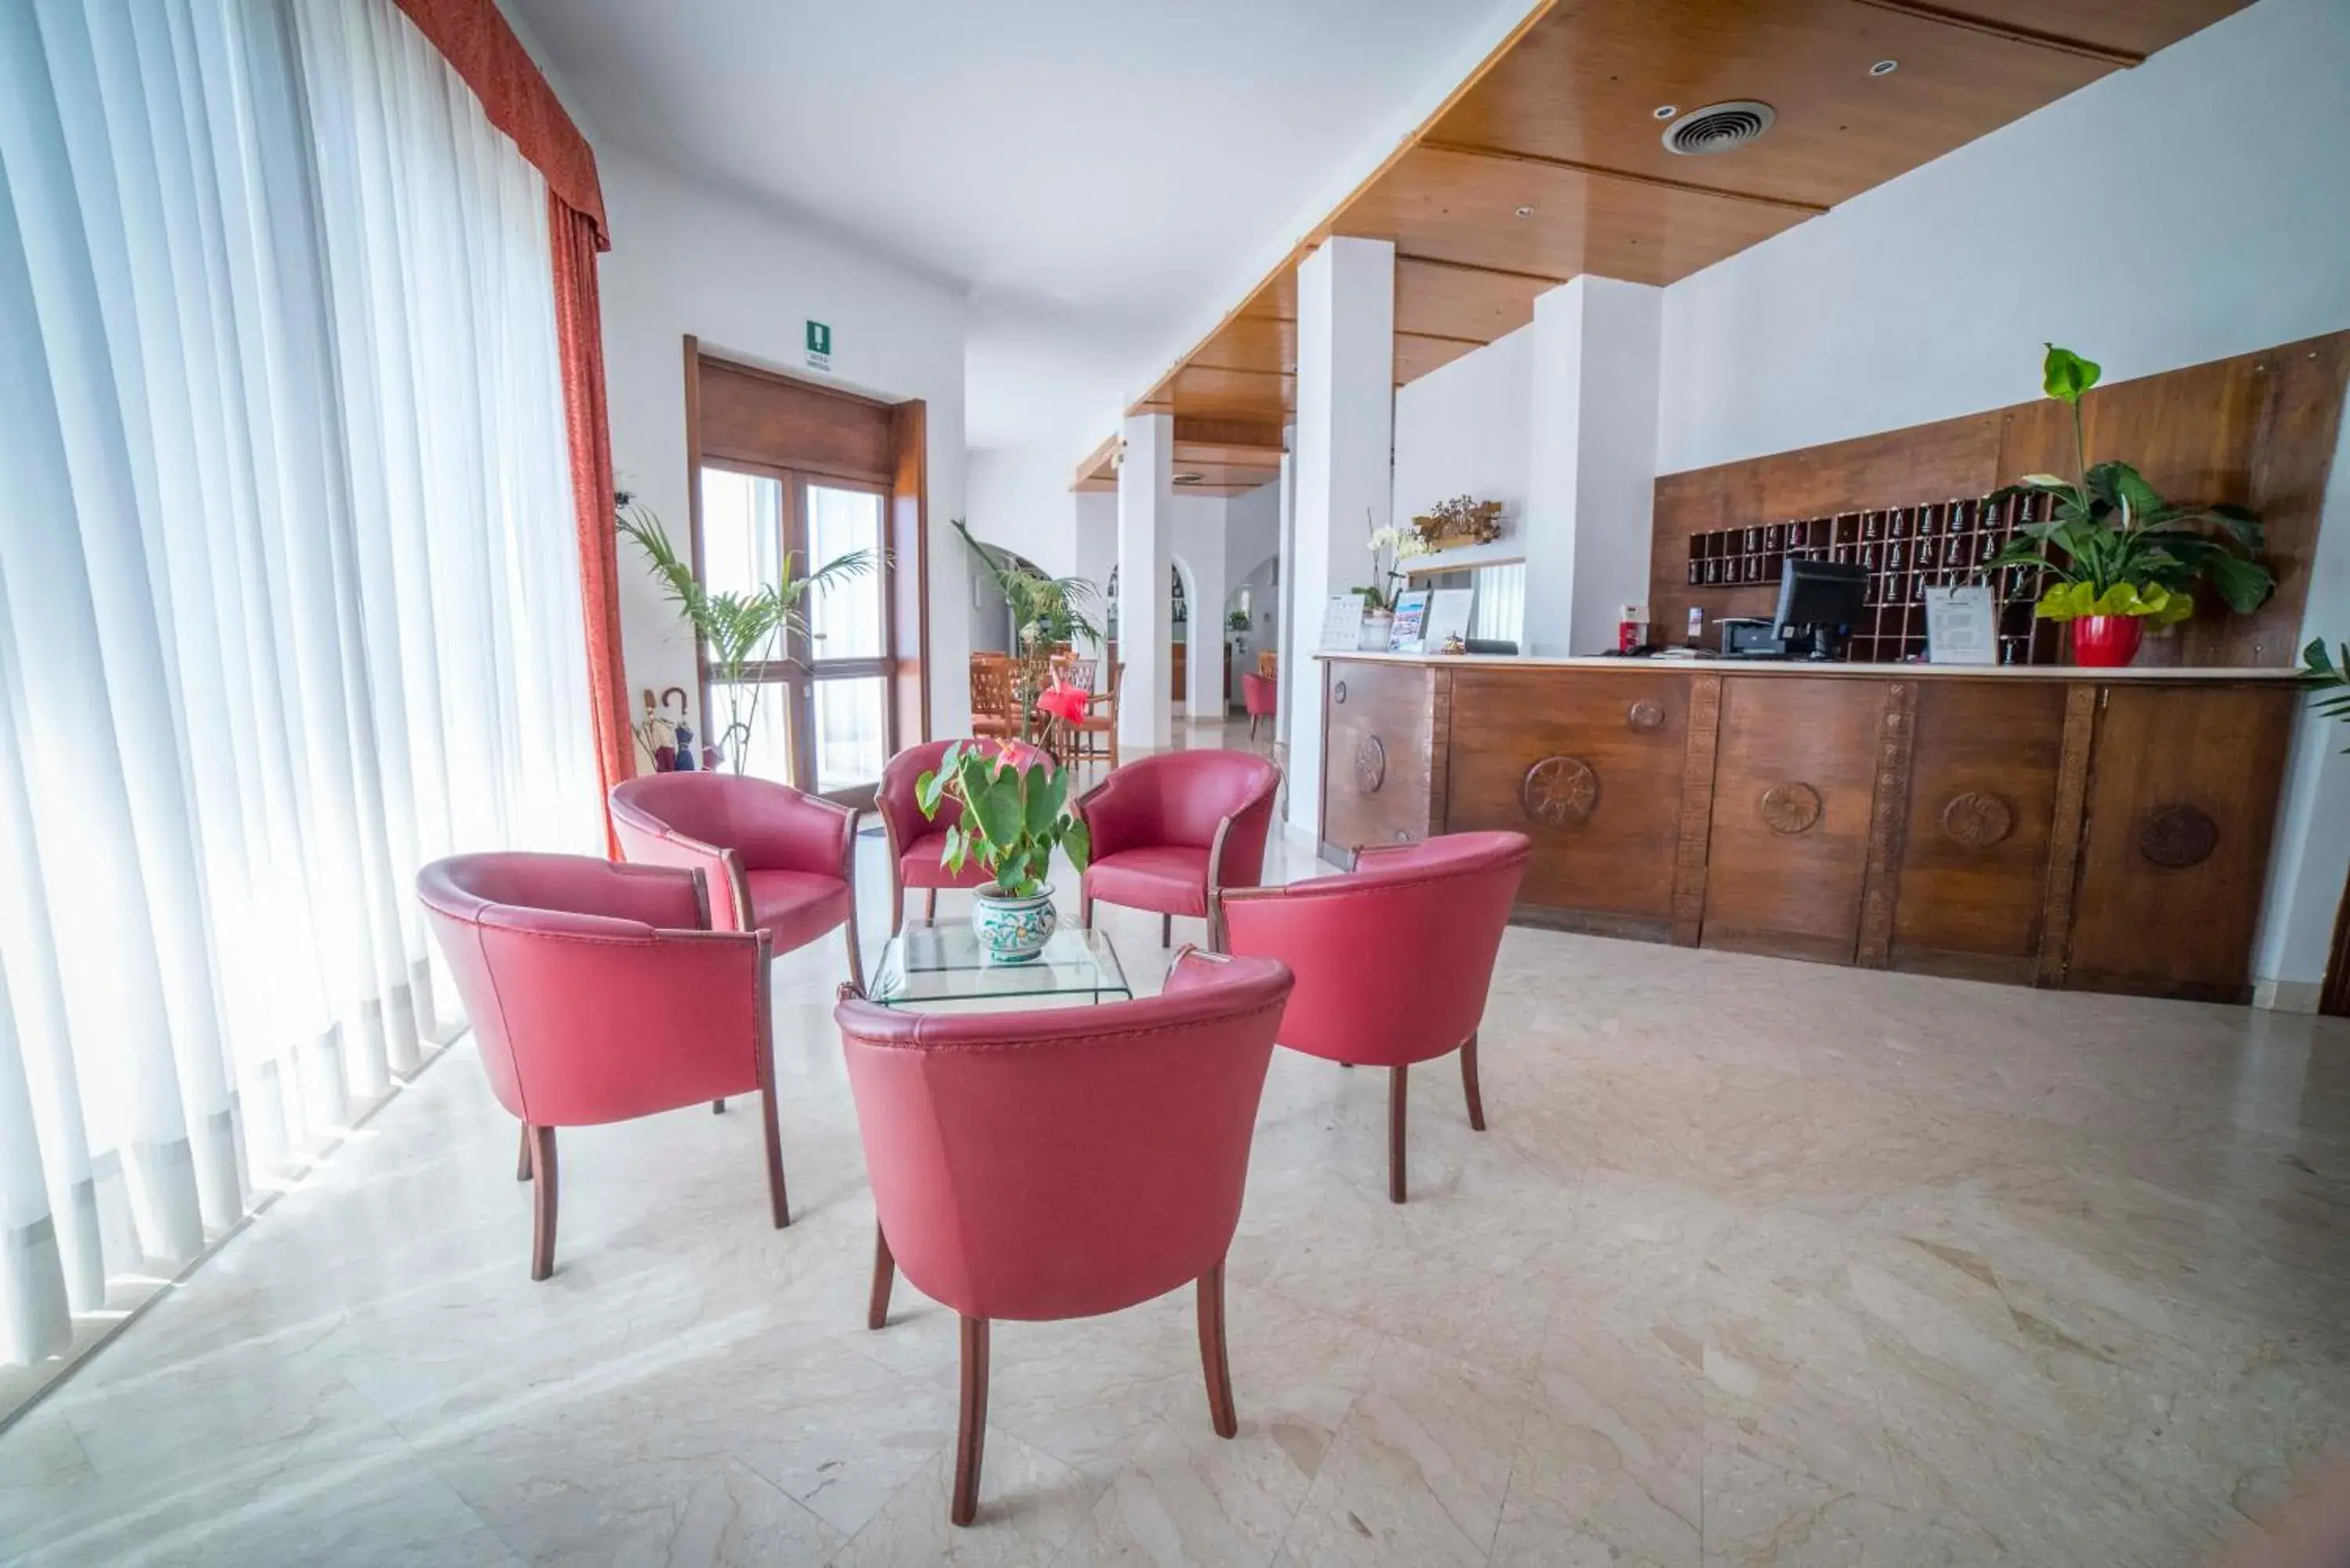 Lobby or reception, Lobby/Reception in Hotel Isola Bella